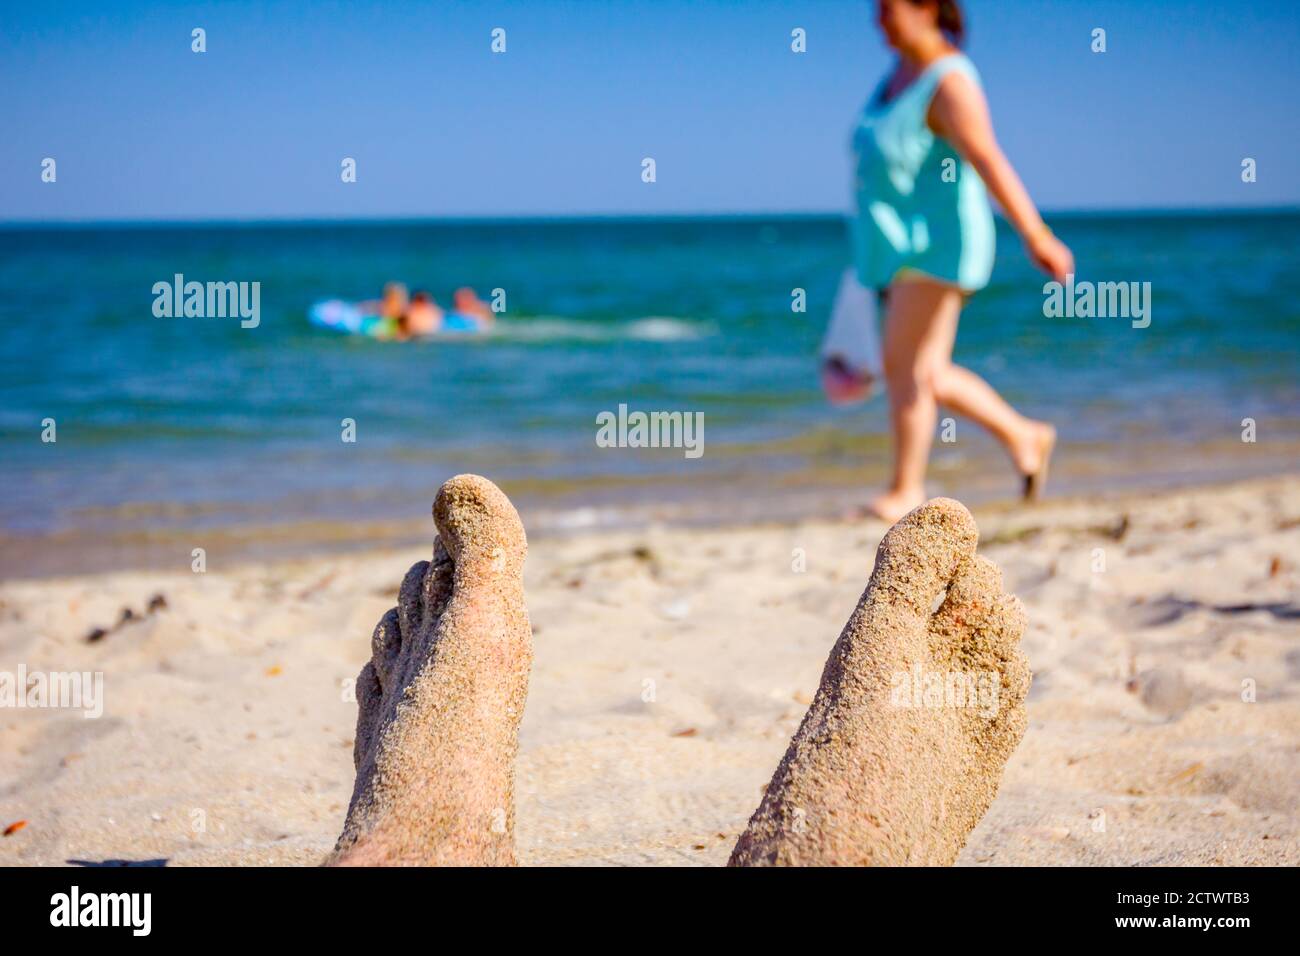 Die gekreuzten Beine des Menschen sonnen sich, indem sie sorglos auf Sand neben der Küste am öffentlichen Strand liegen. Stockfoto